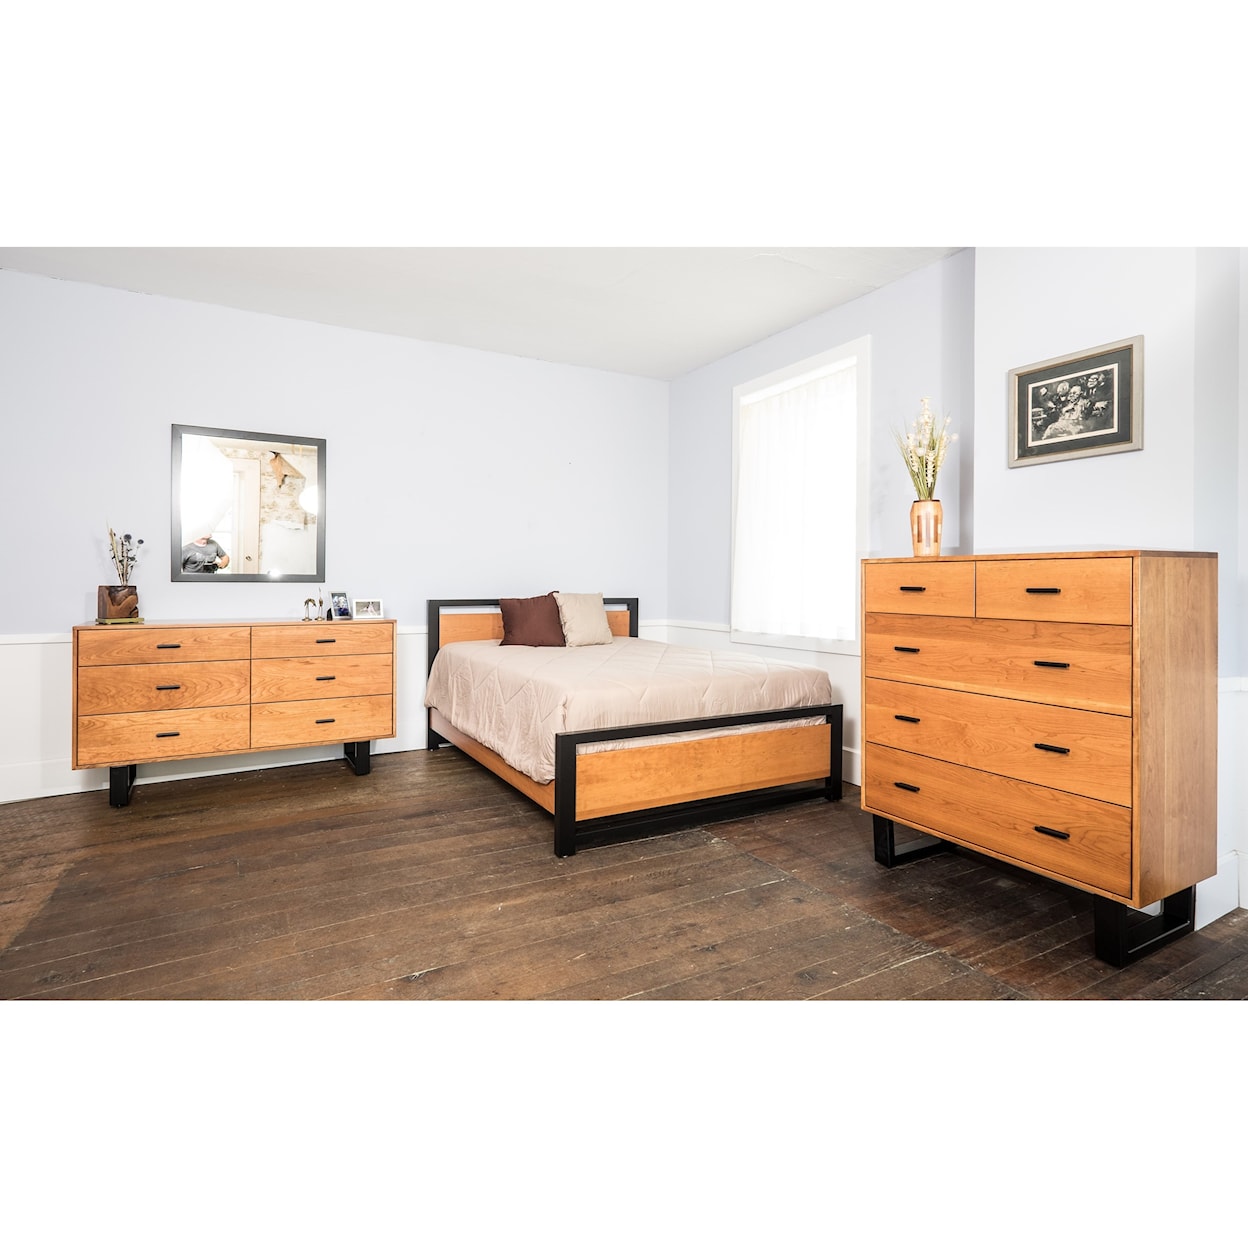 Glenmont Furniture Sullivan Park Customizable Queen Bedroom Group